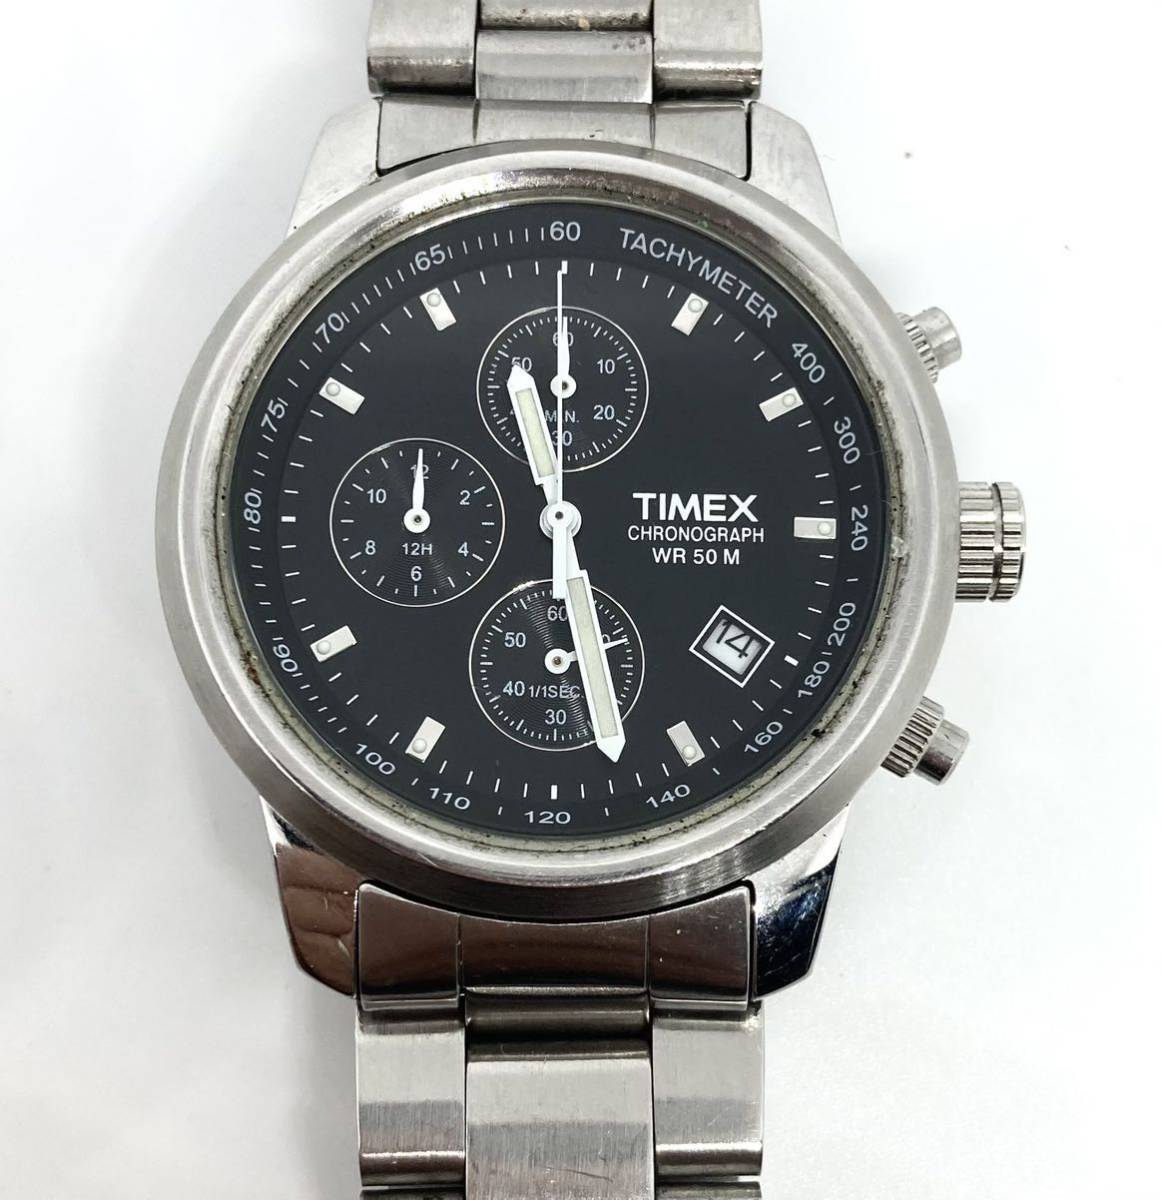  Timex хронограф батарейка заменена H6 TIMEX мужские наручные часы 